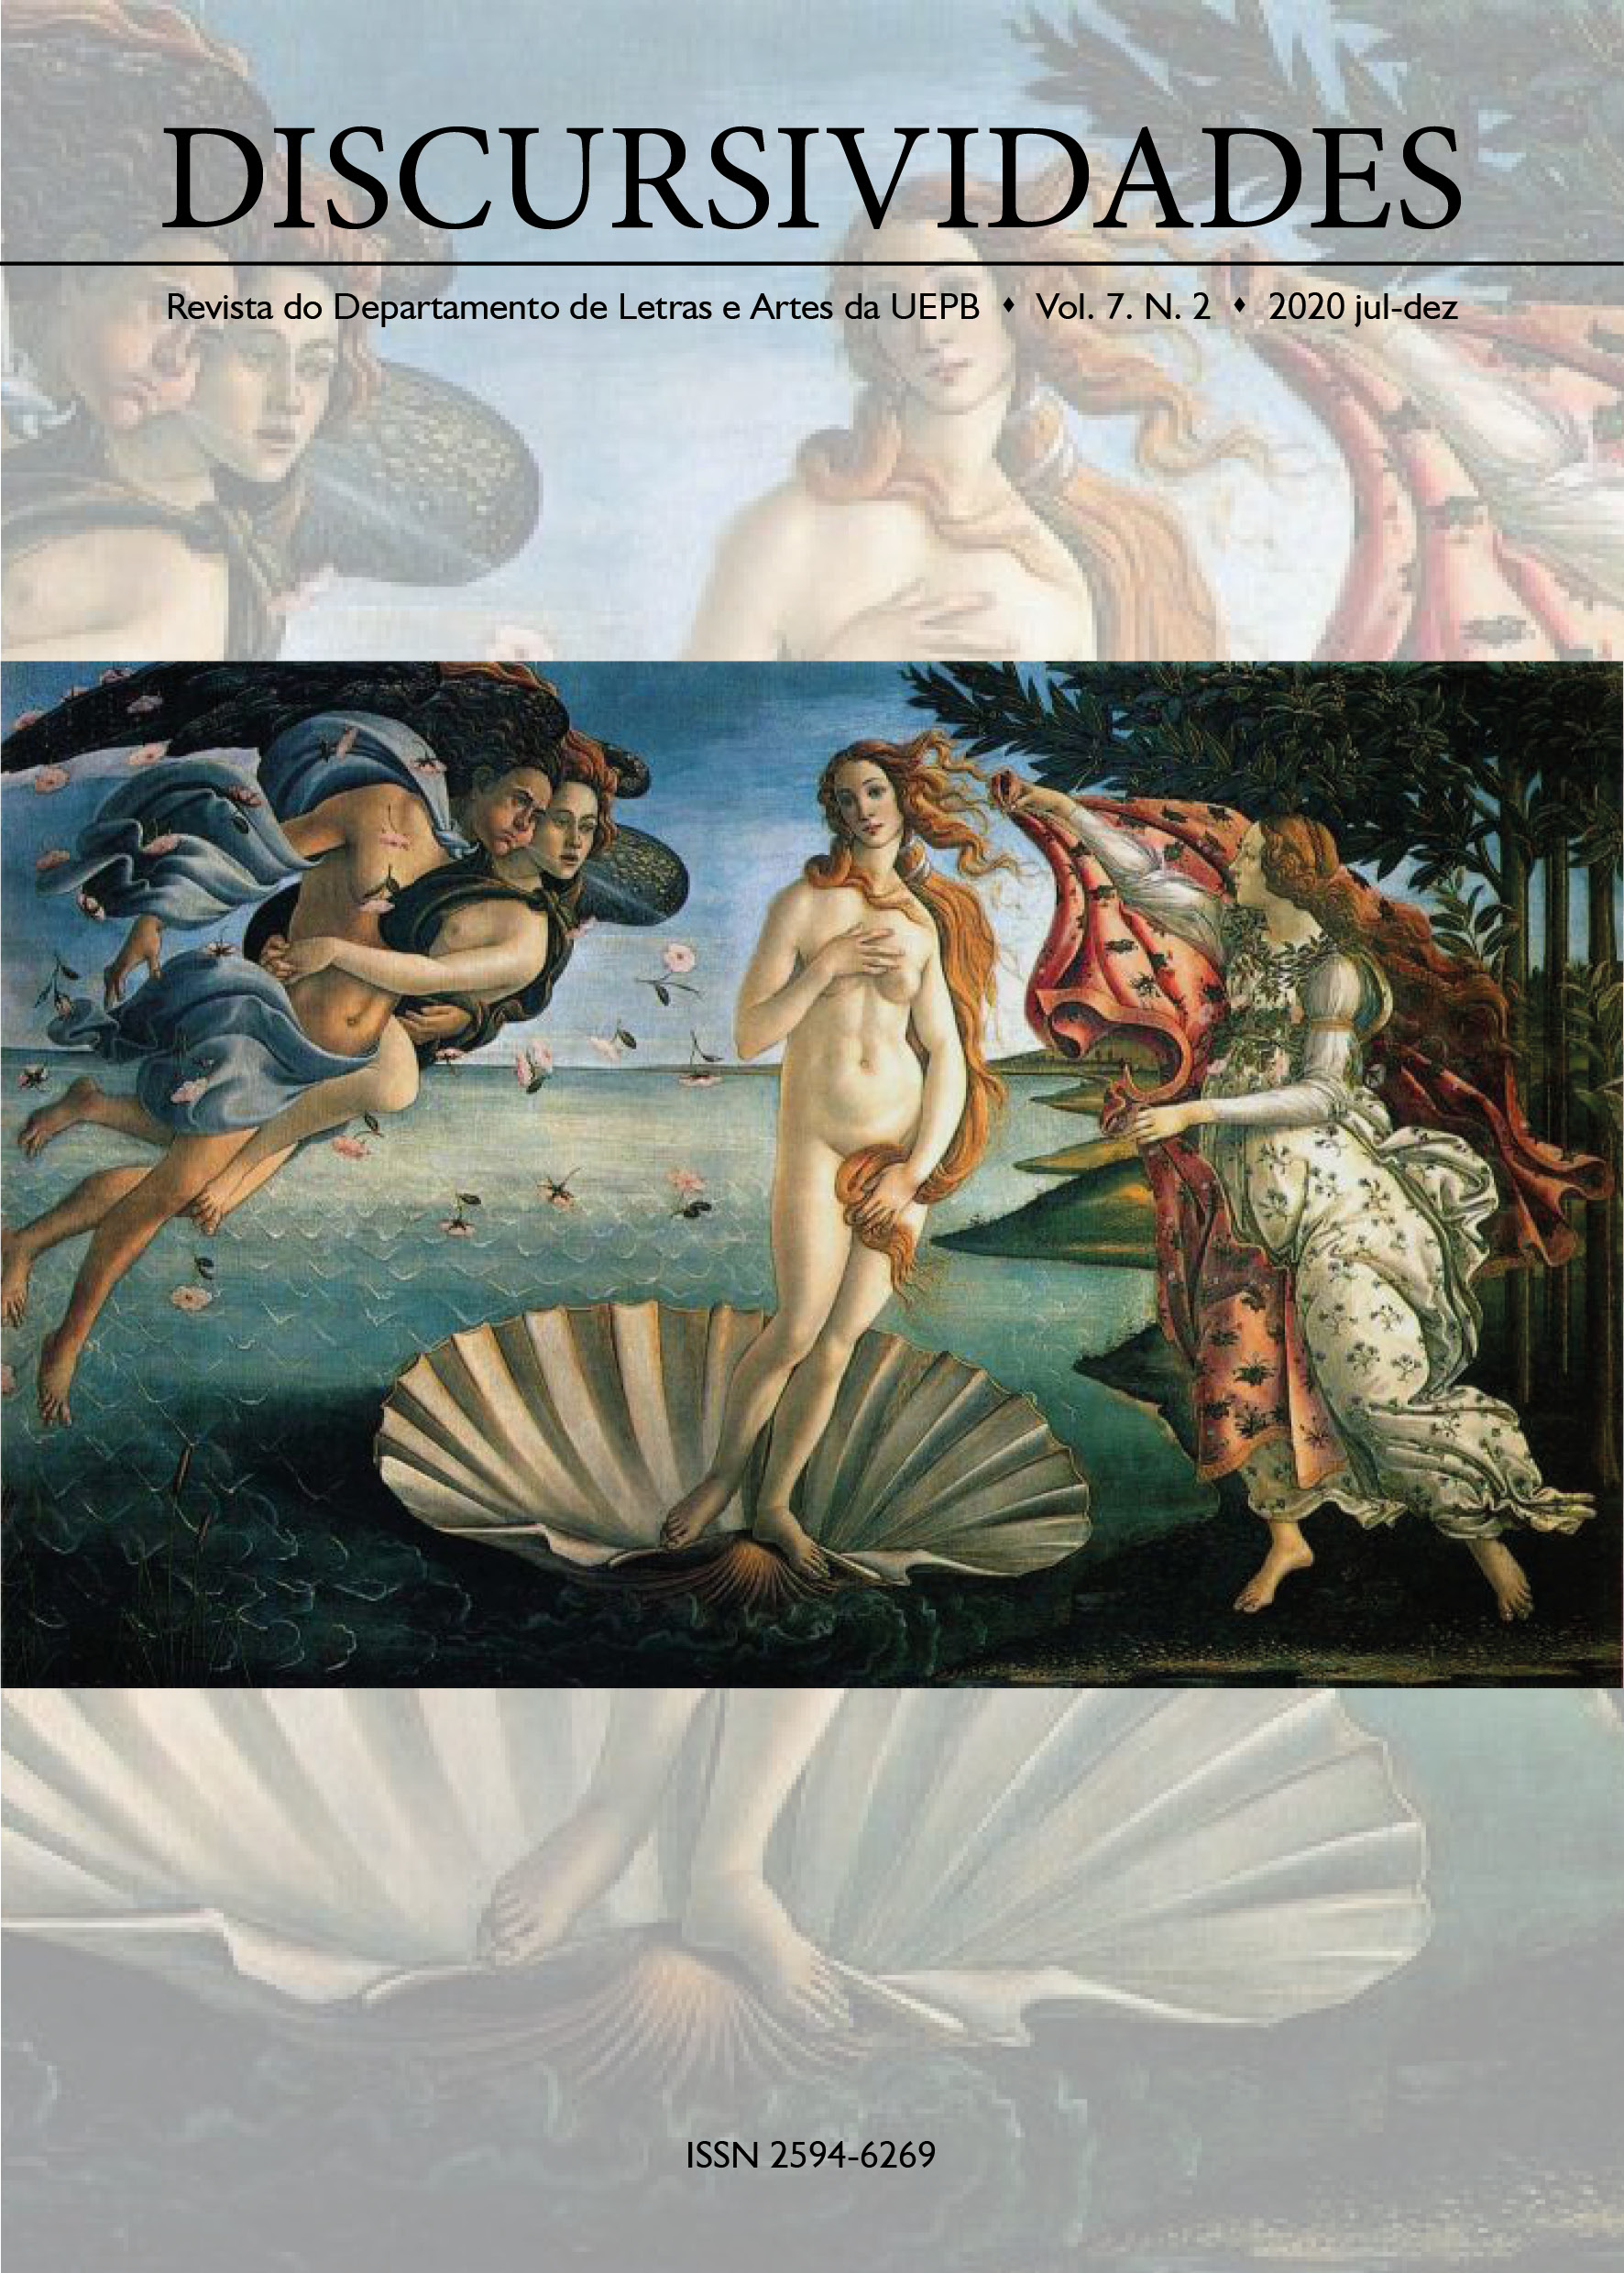 "O nascimento de Vênus" by Sandro Botticelli (1484-1485)